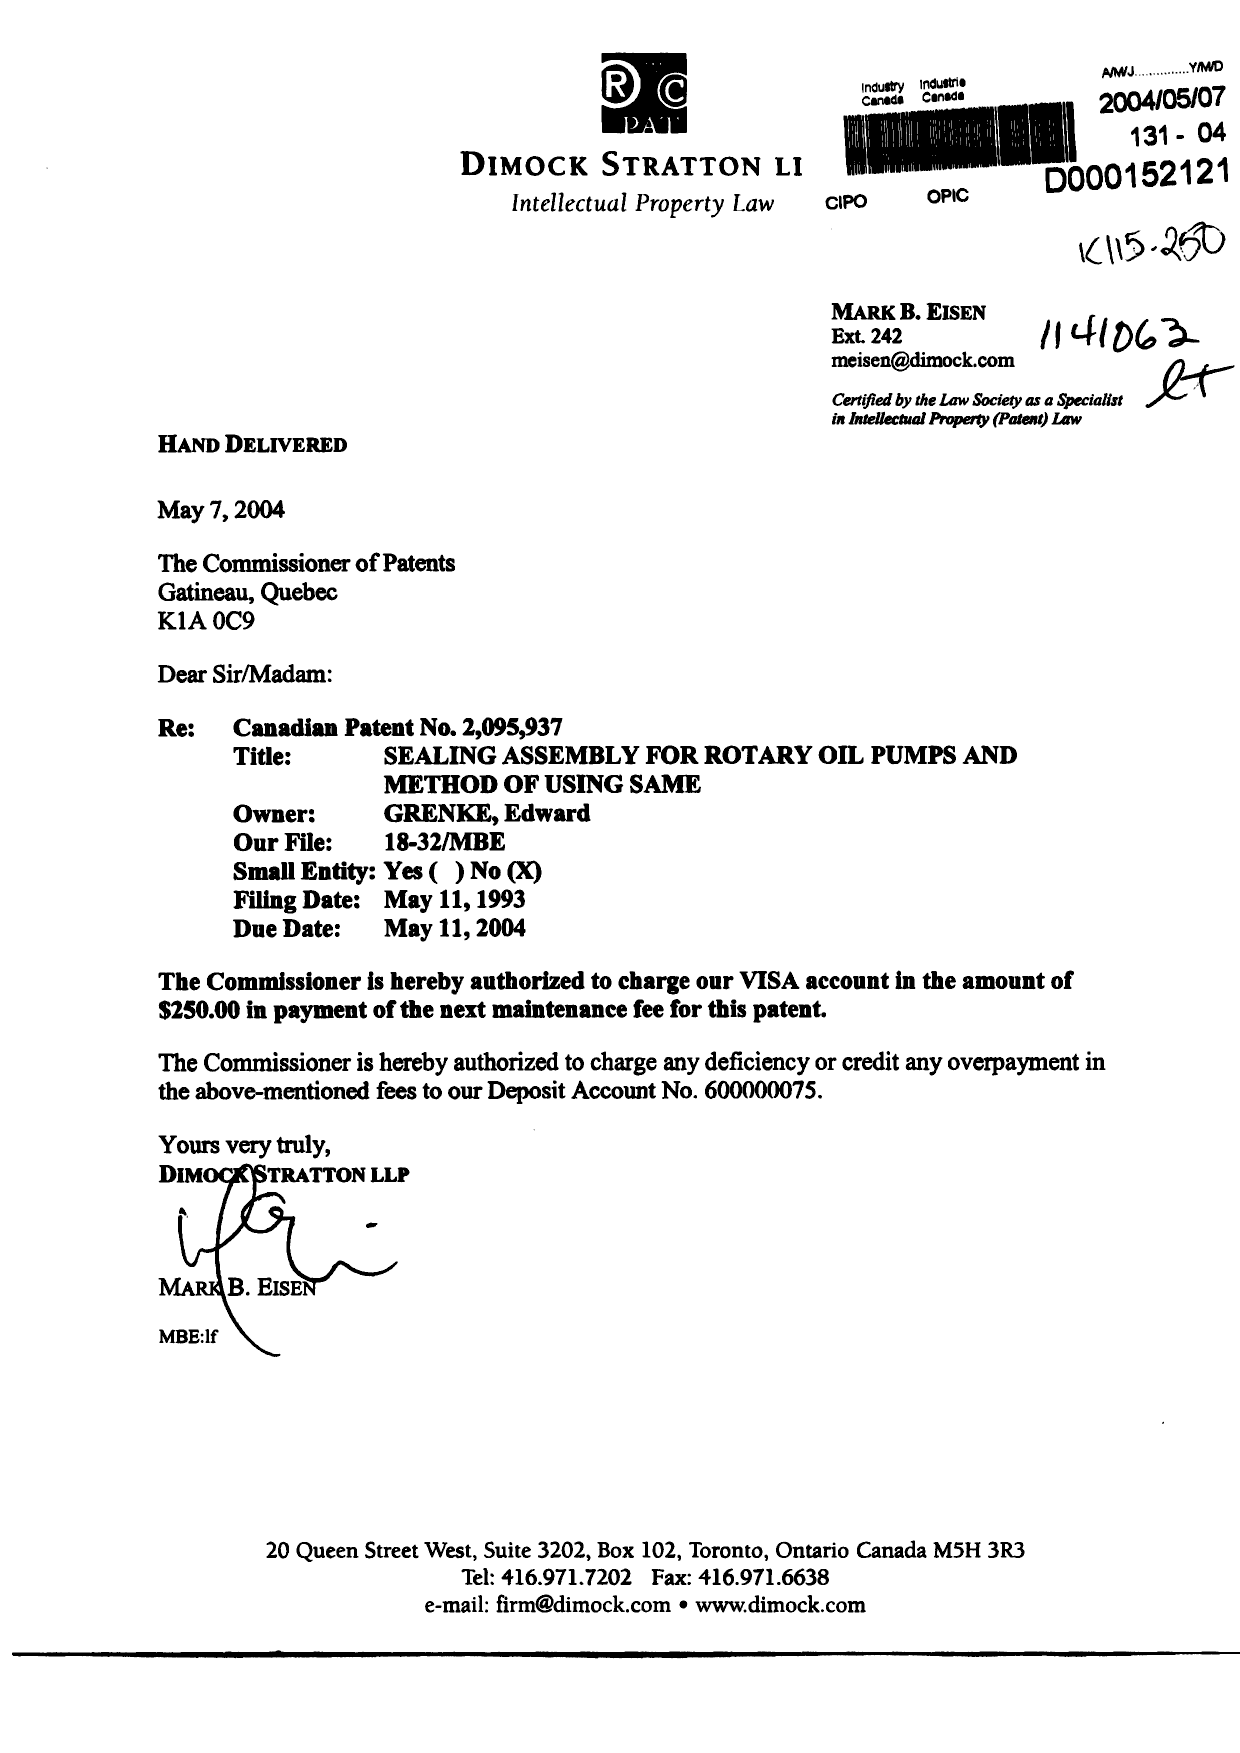 Document de brevet canadien 2095937. Taxes 20031207. Image 1 de 1